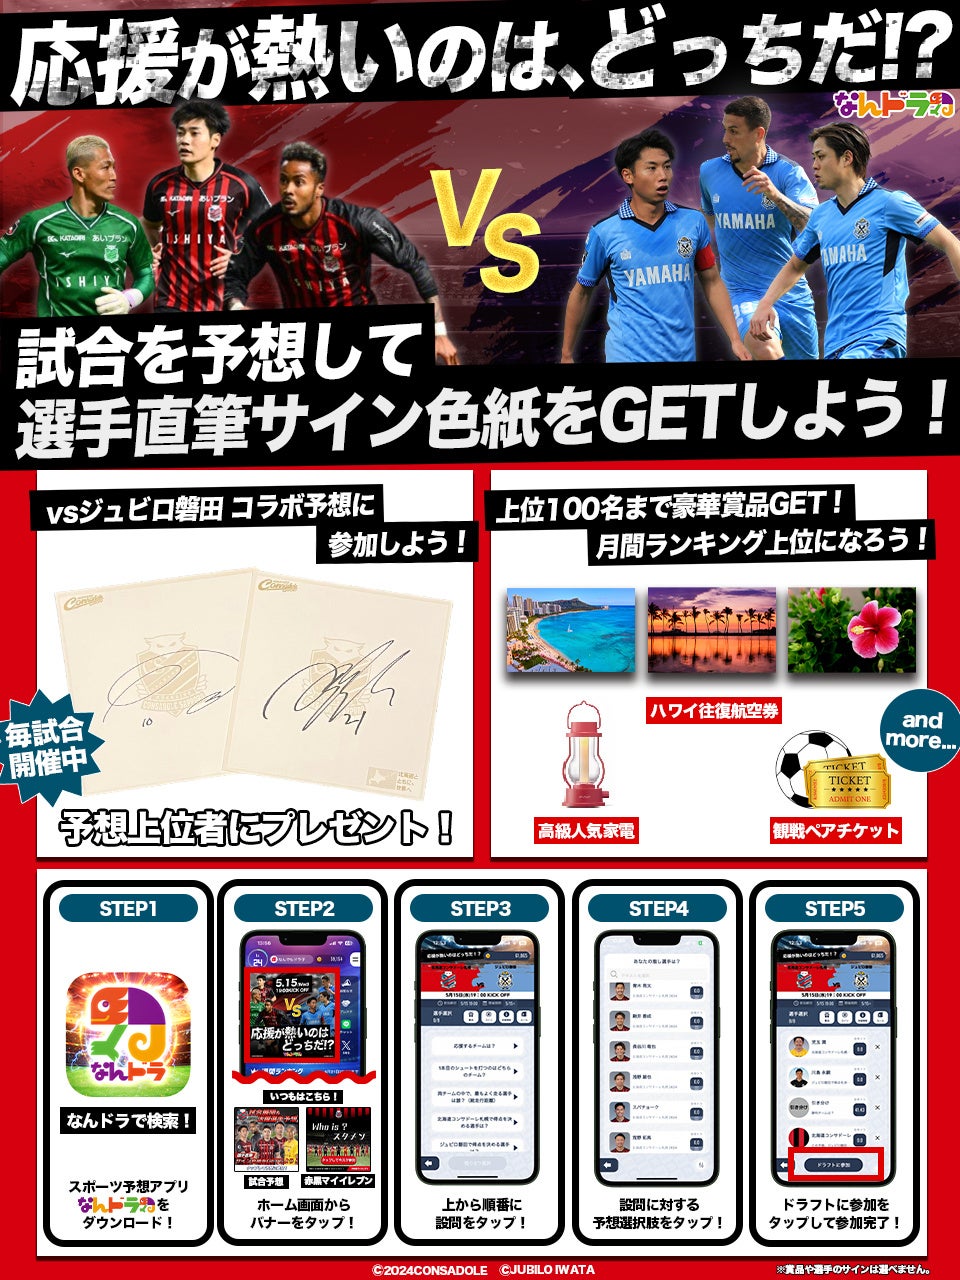 どうとんぼり神座、サッカーチーム「ディアブロッサ高田FC」へ企業スポンサーとして支援